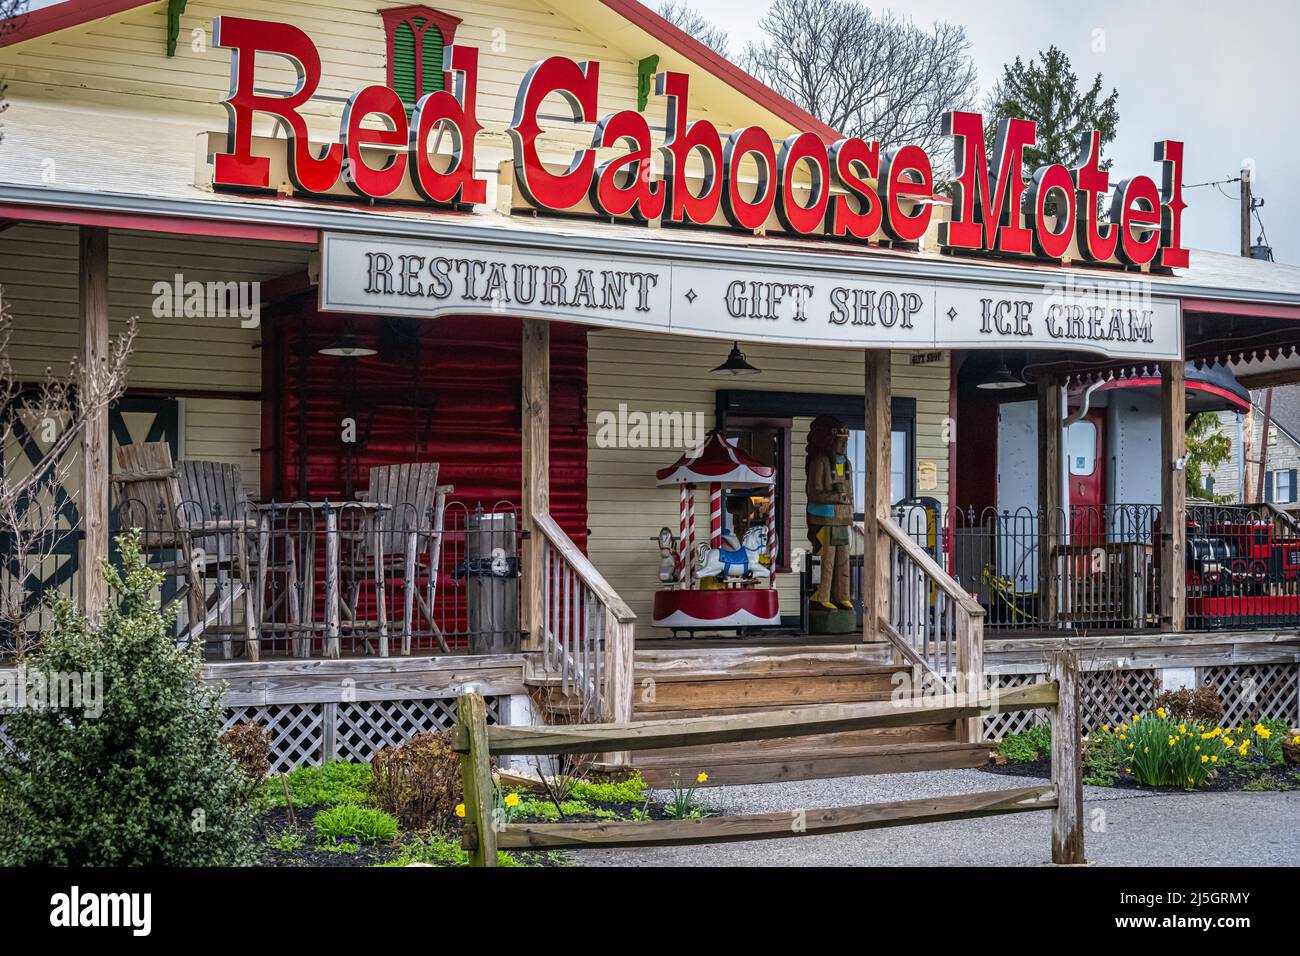 Red Caboose Motel en Lancaster County, PA ofrece una experiencia de alojamiento única con 47 habitaciones que consisten en cabooses, un coche de equipaje y un coche de oficina de correos. Foto de stock